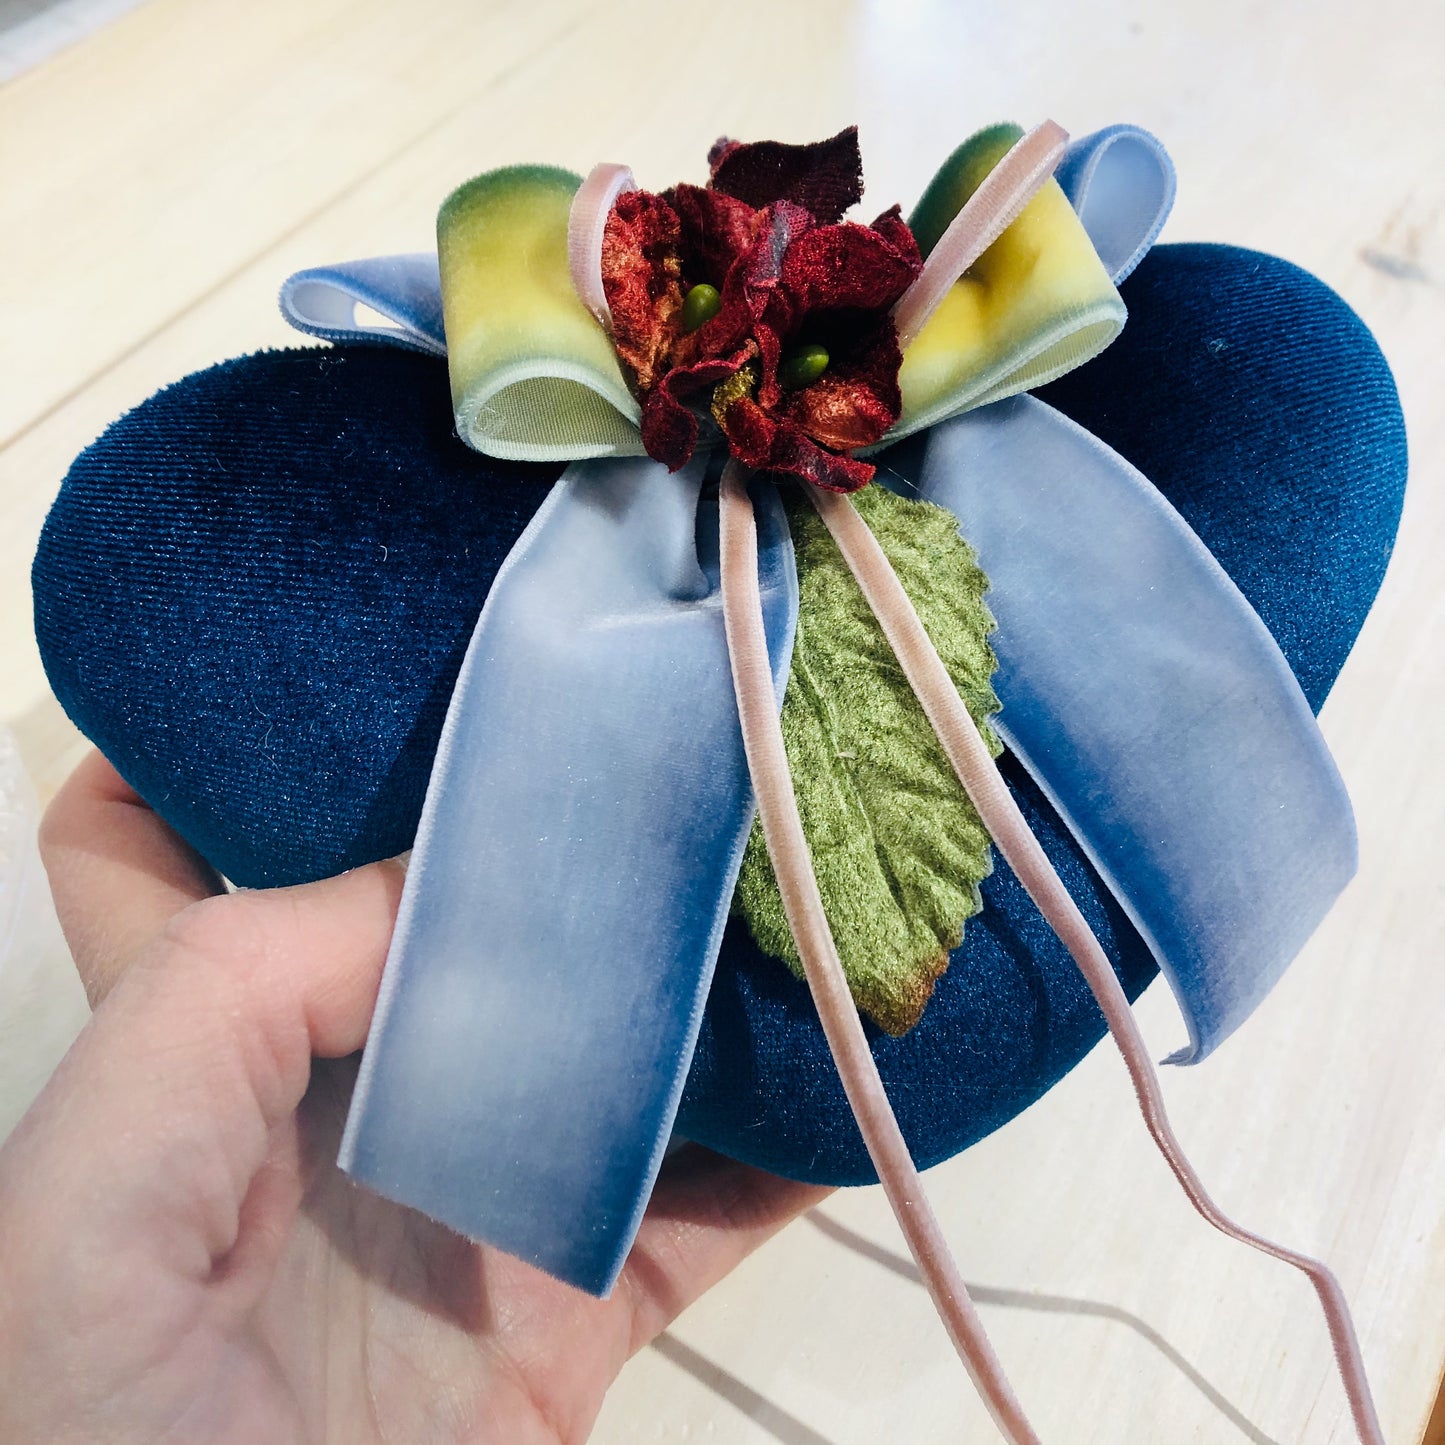 velvet heart sachet with velvet flowers, Handmade Rose Scented Heart Sachet